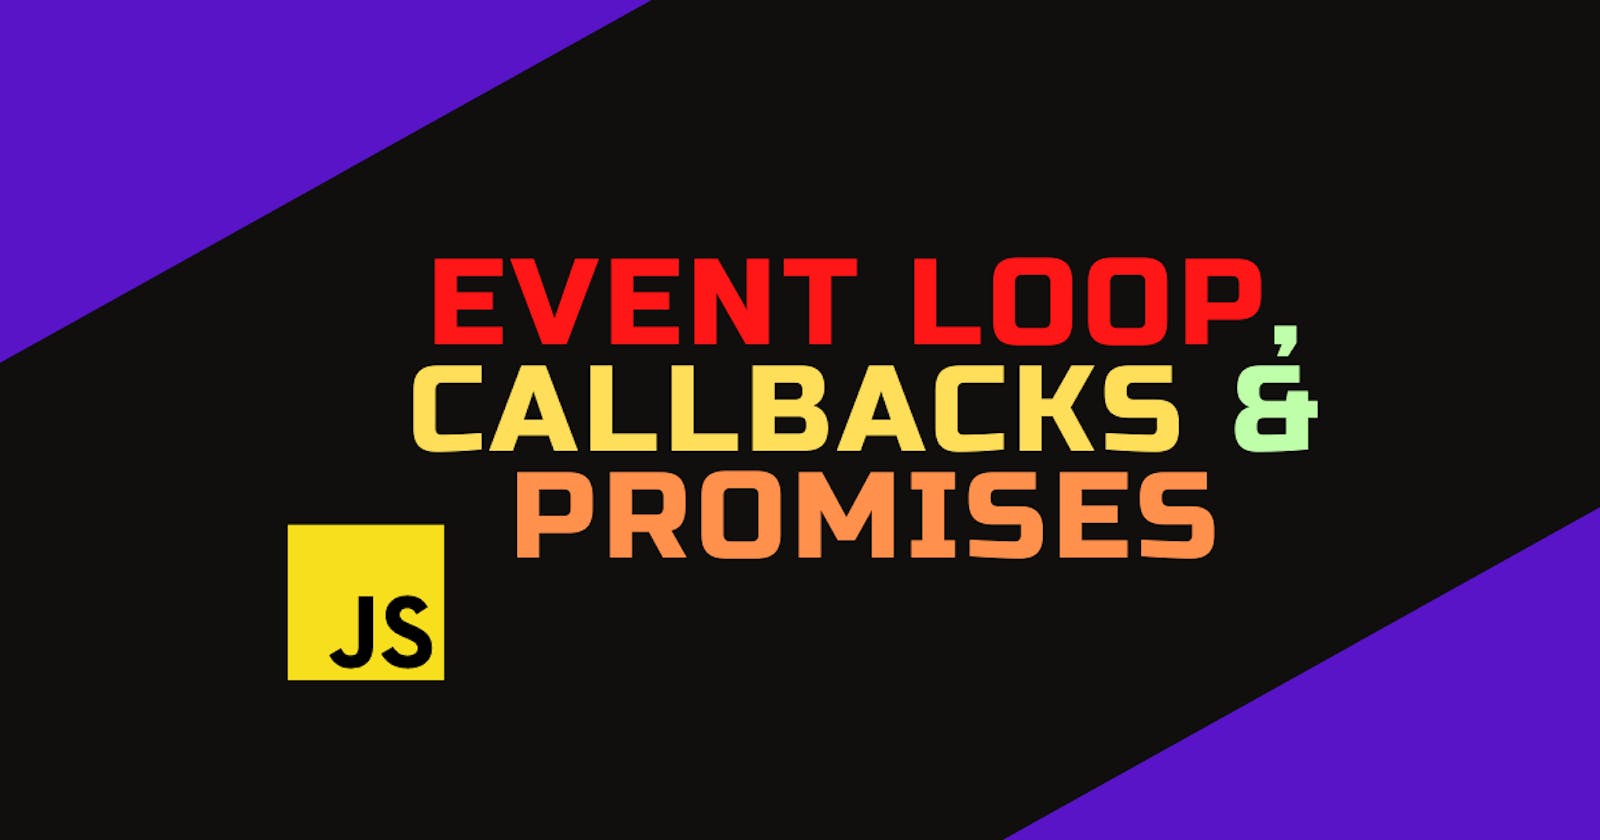 Event Loop, Callbacks & Promises